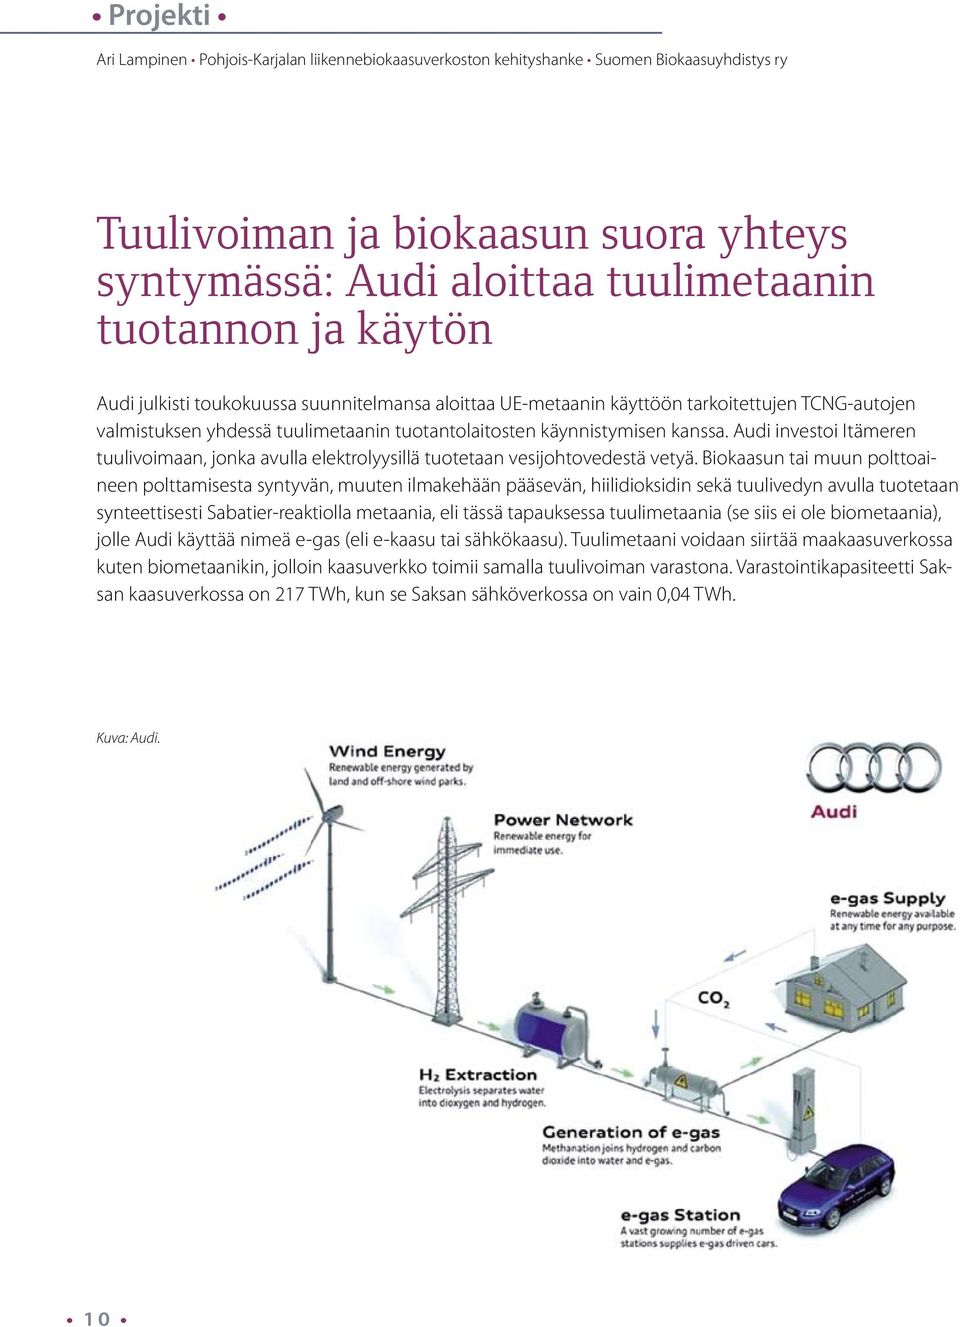 Audi investoi Itämeren tuulivoimaan, jonka avulla elektrolyysillä tuotetaan vesijohtovedestä vetyä.